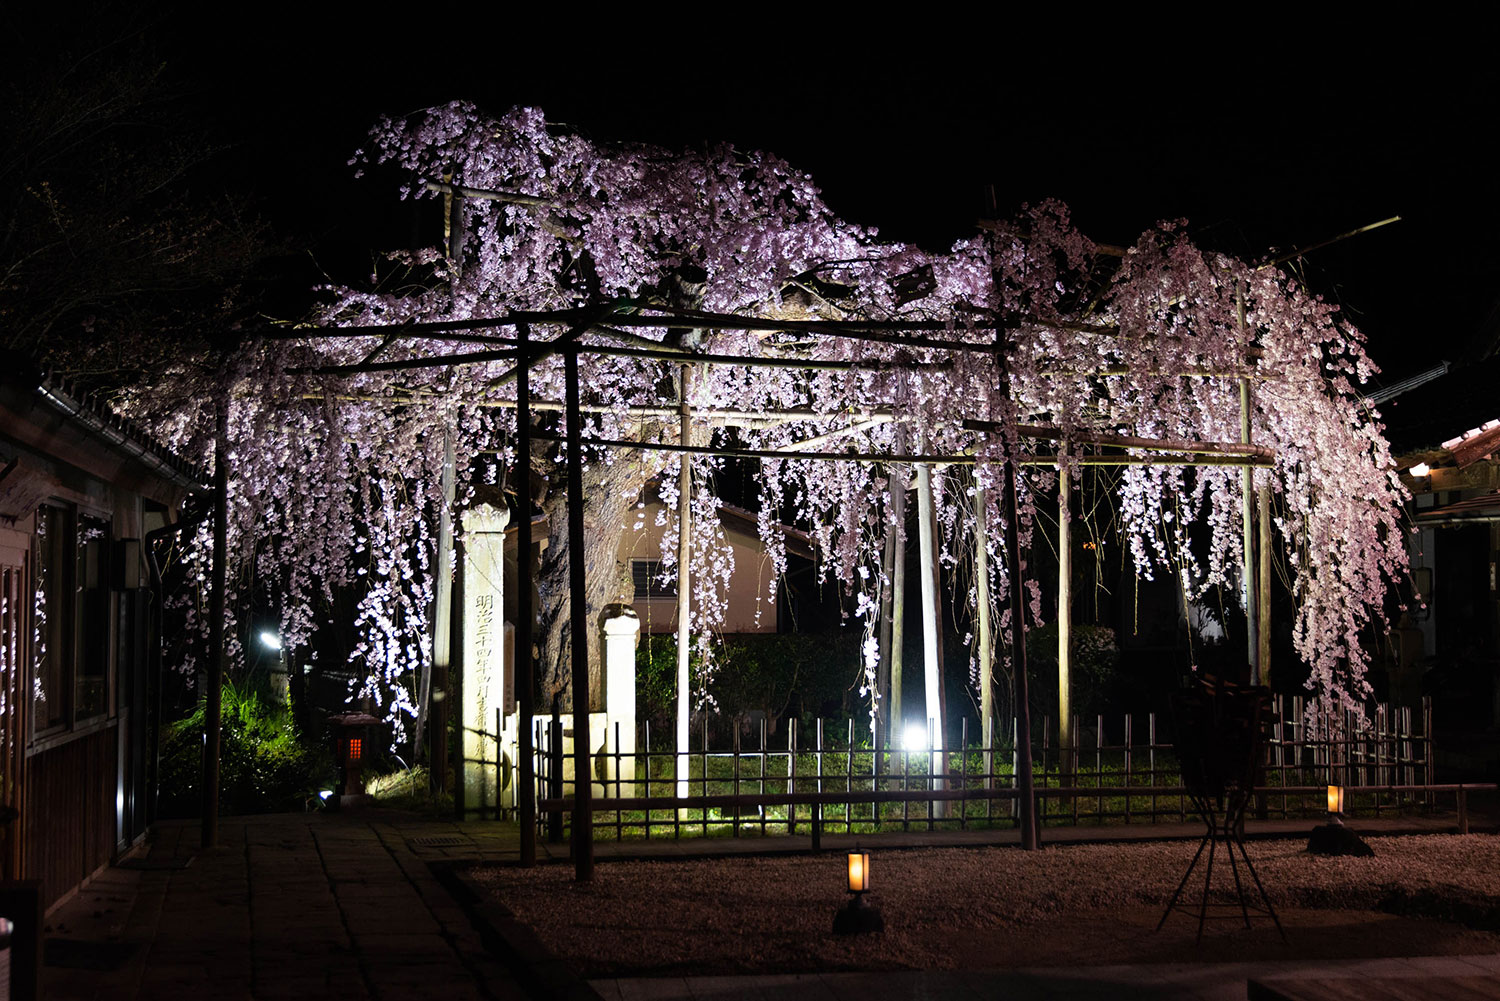 松江の桜の名所、千手院の枝垂れ桜の夜桜